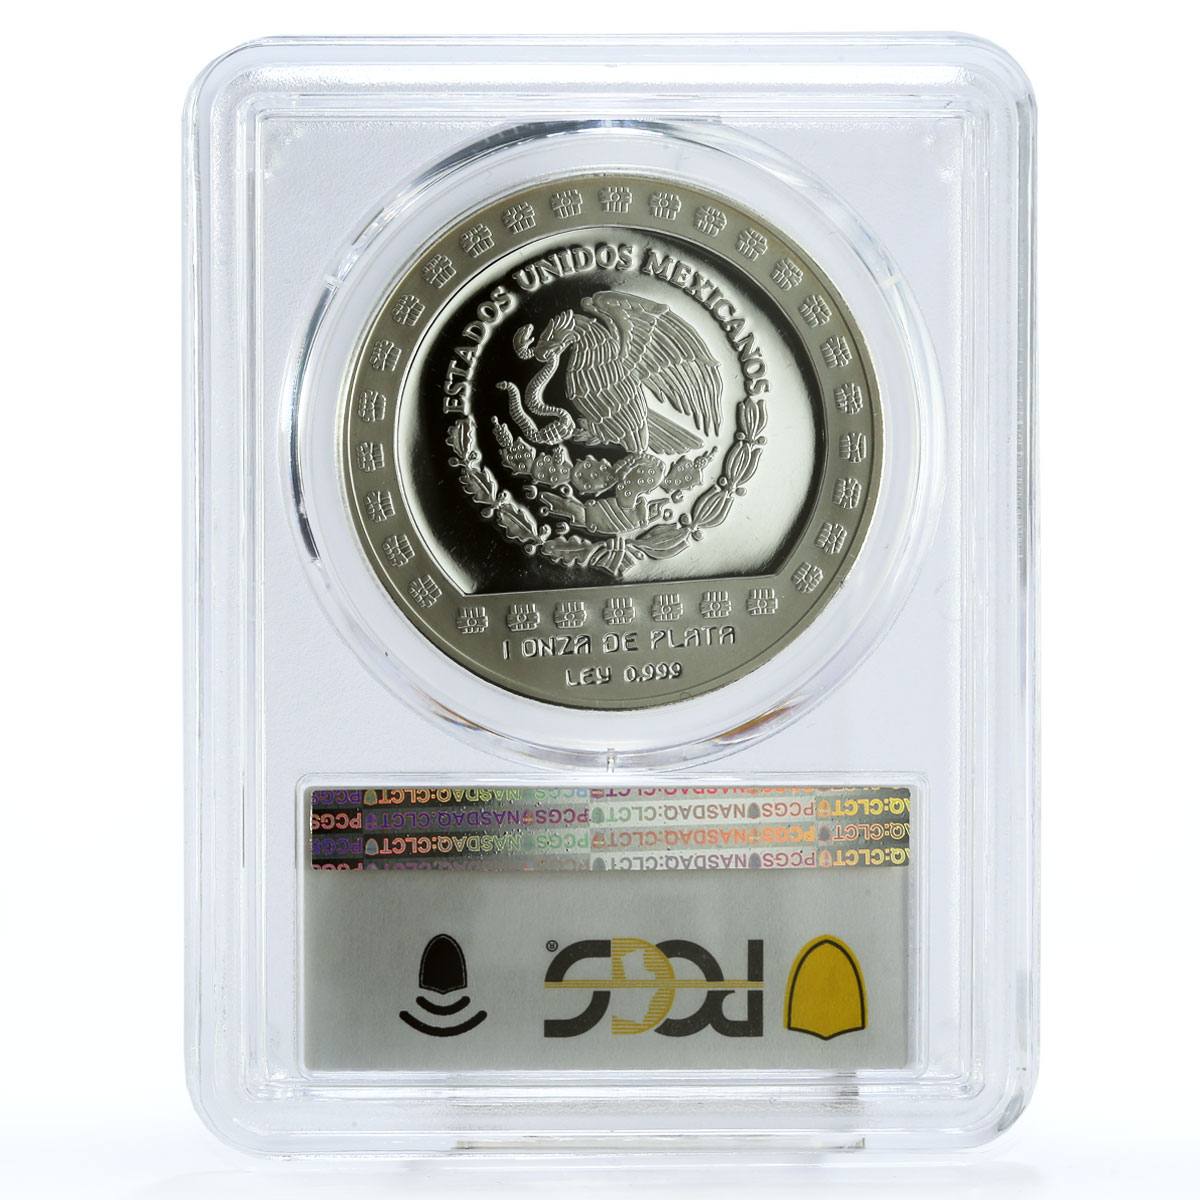 Mexico 100 pesos Huehueteotl God of Fire Statue PR69 PCGS silver coin 1992